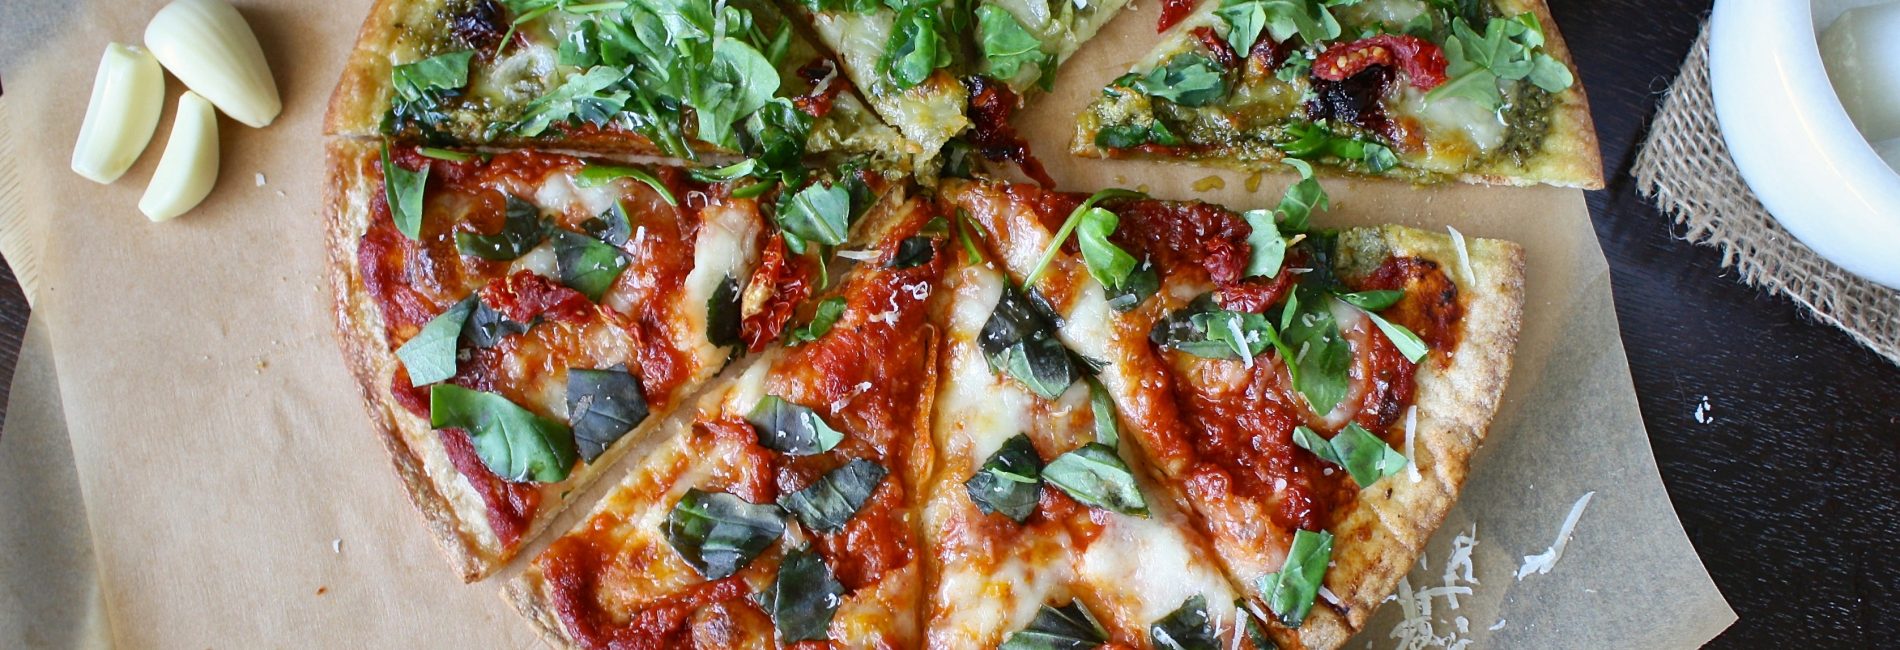 Healthy pizza  : pizza à base de choux-fleurs